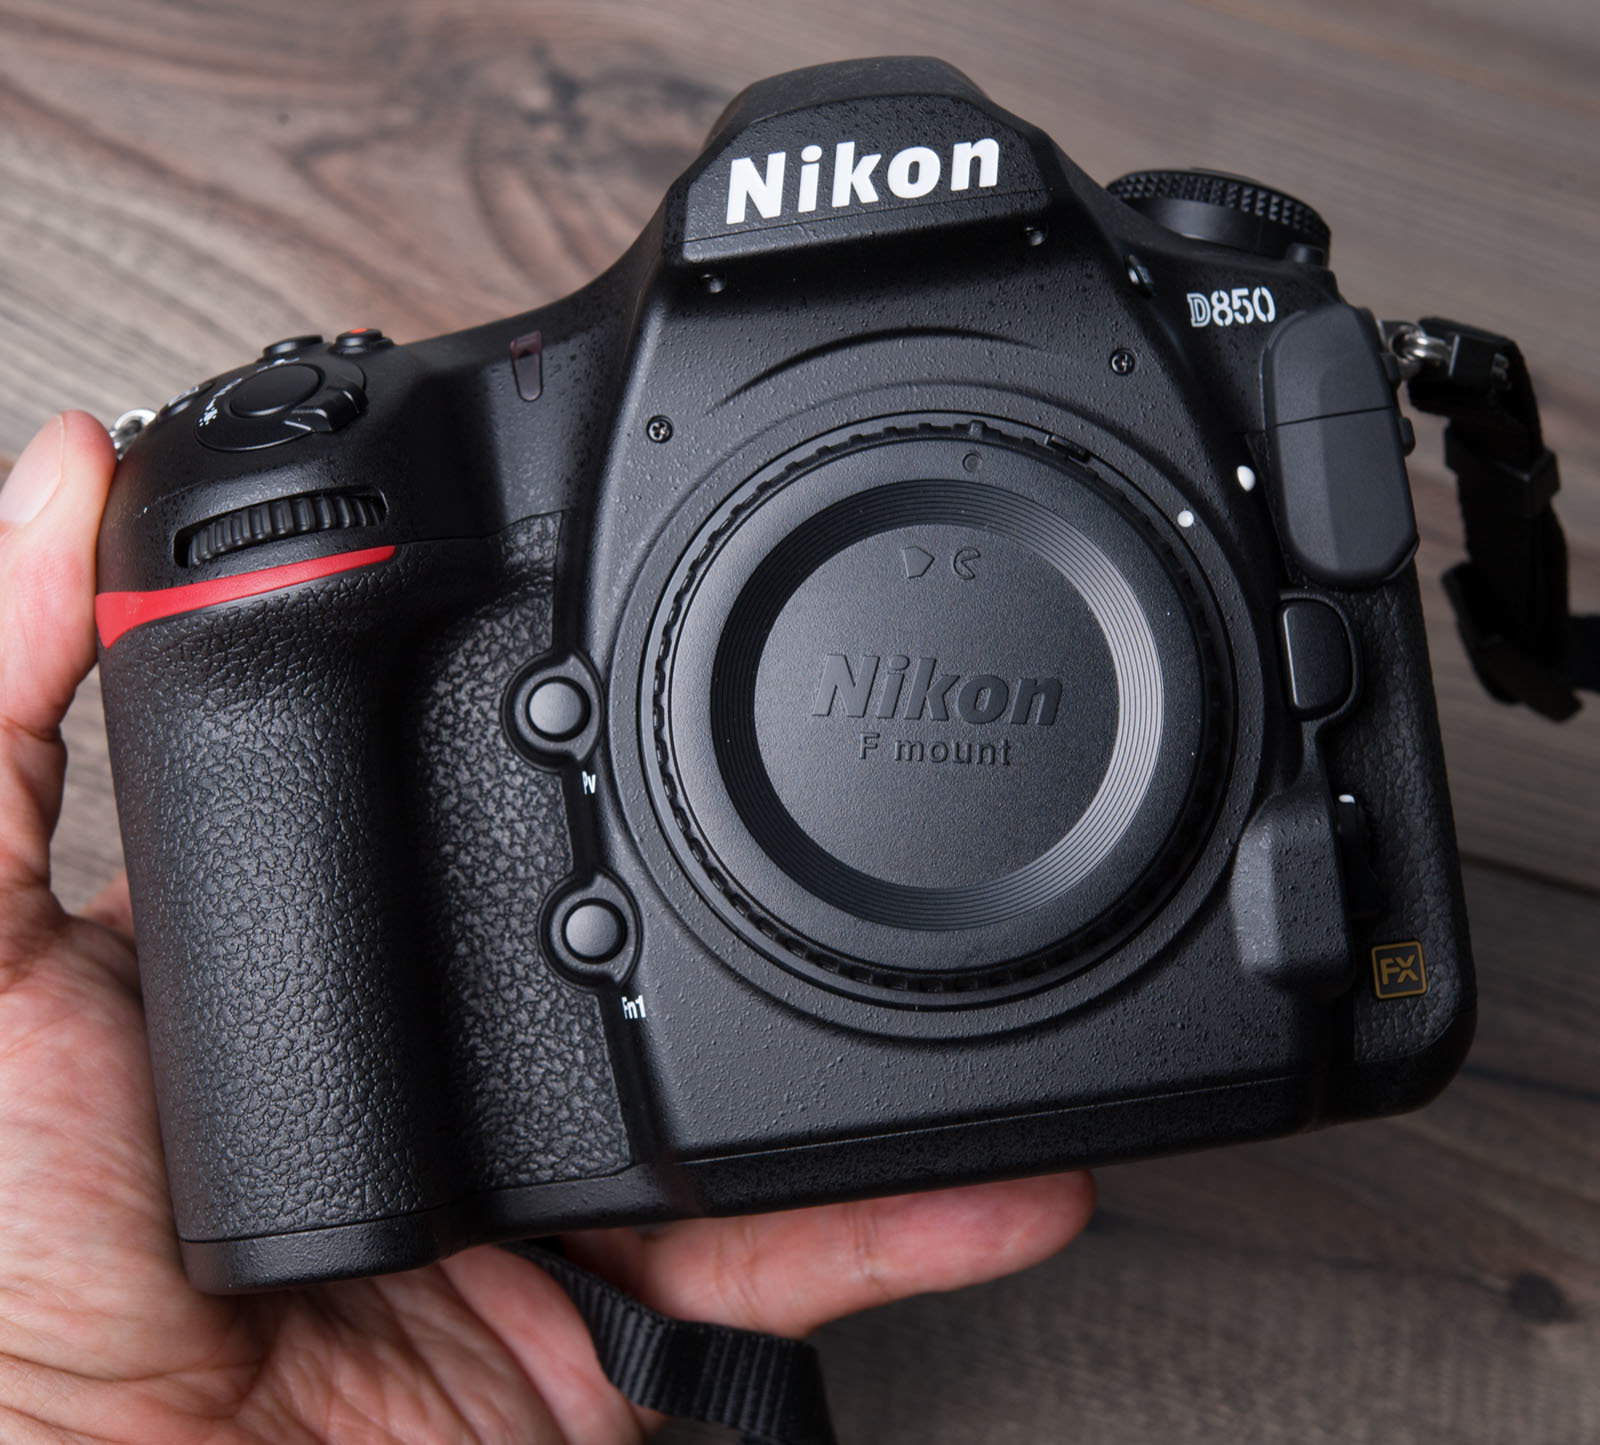 Maggiori informazioni su "Nikon D850 : io faccio davvero la differenza ! (test/prova)"